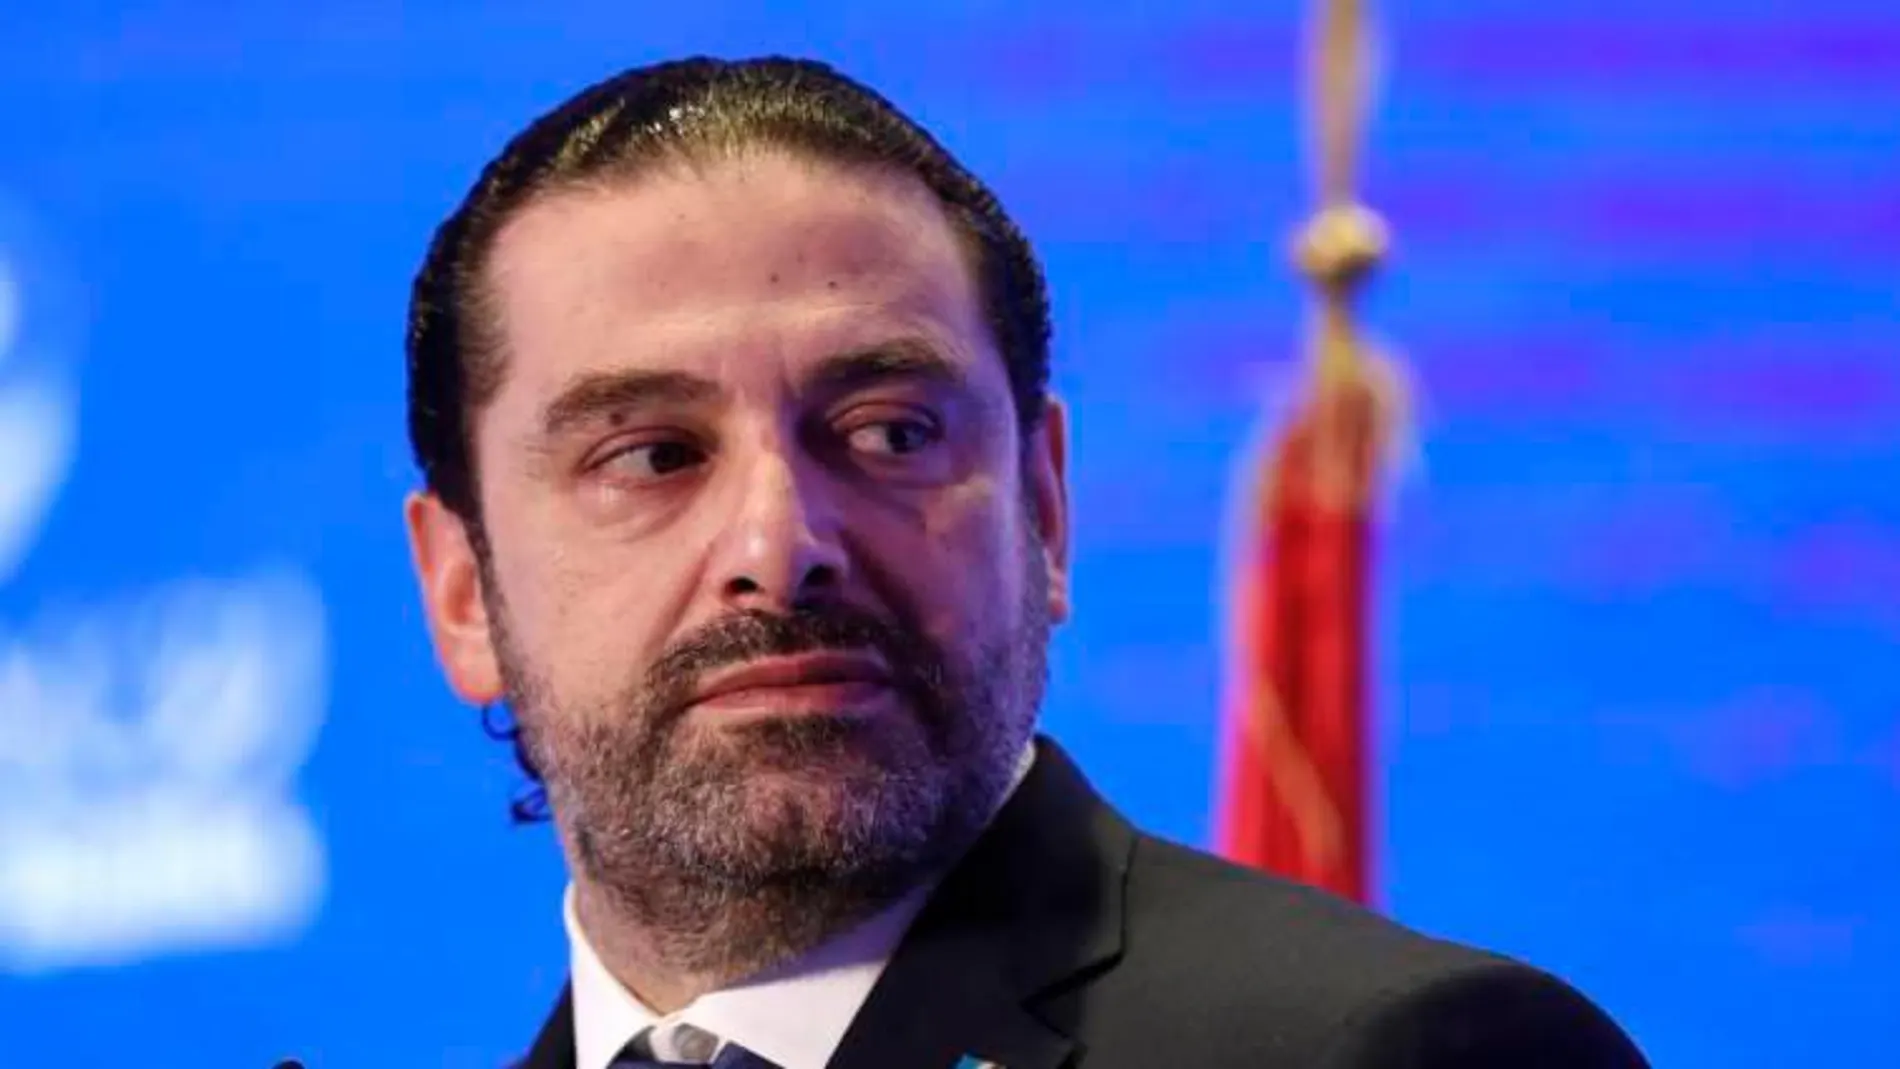 El primer ministro libanés, Saad Hariri, en una imagen de archivo